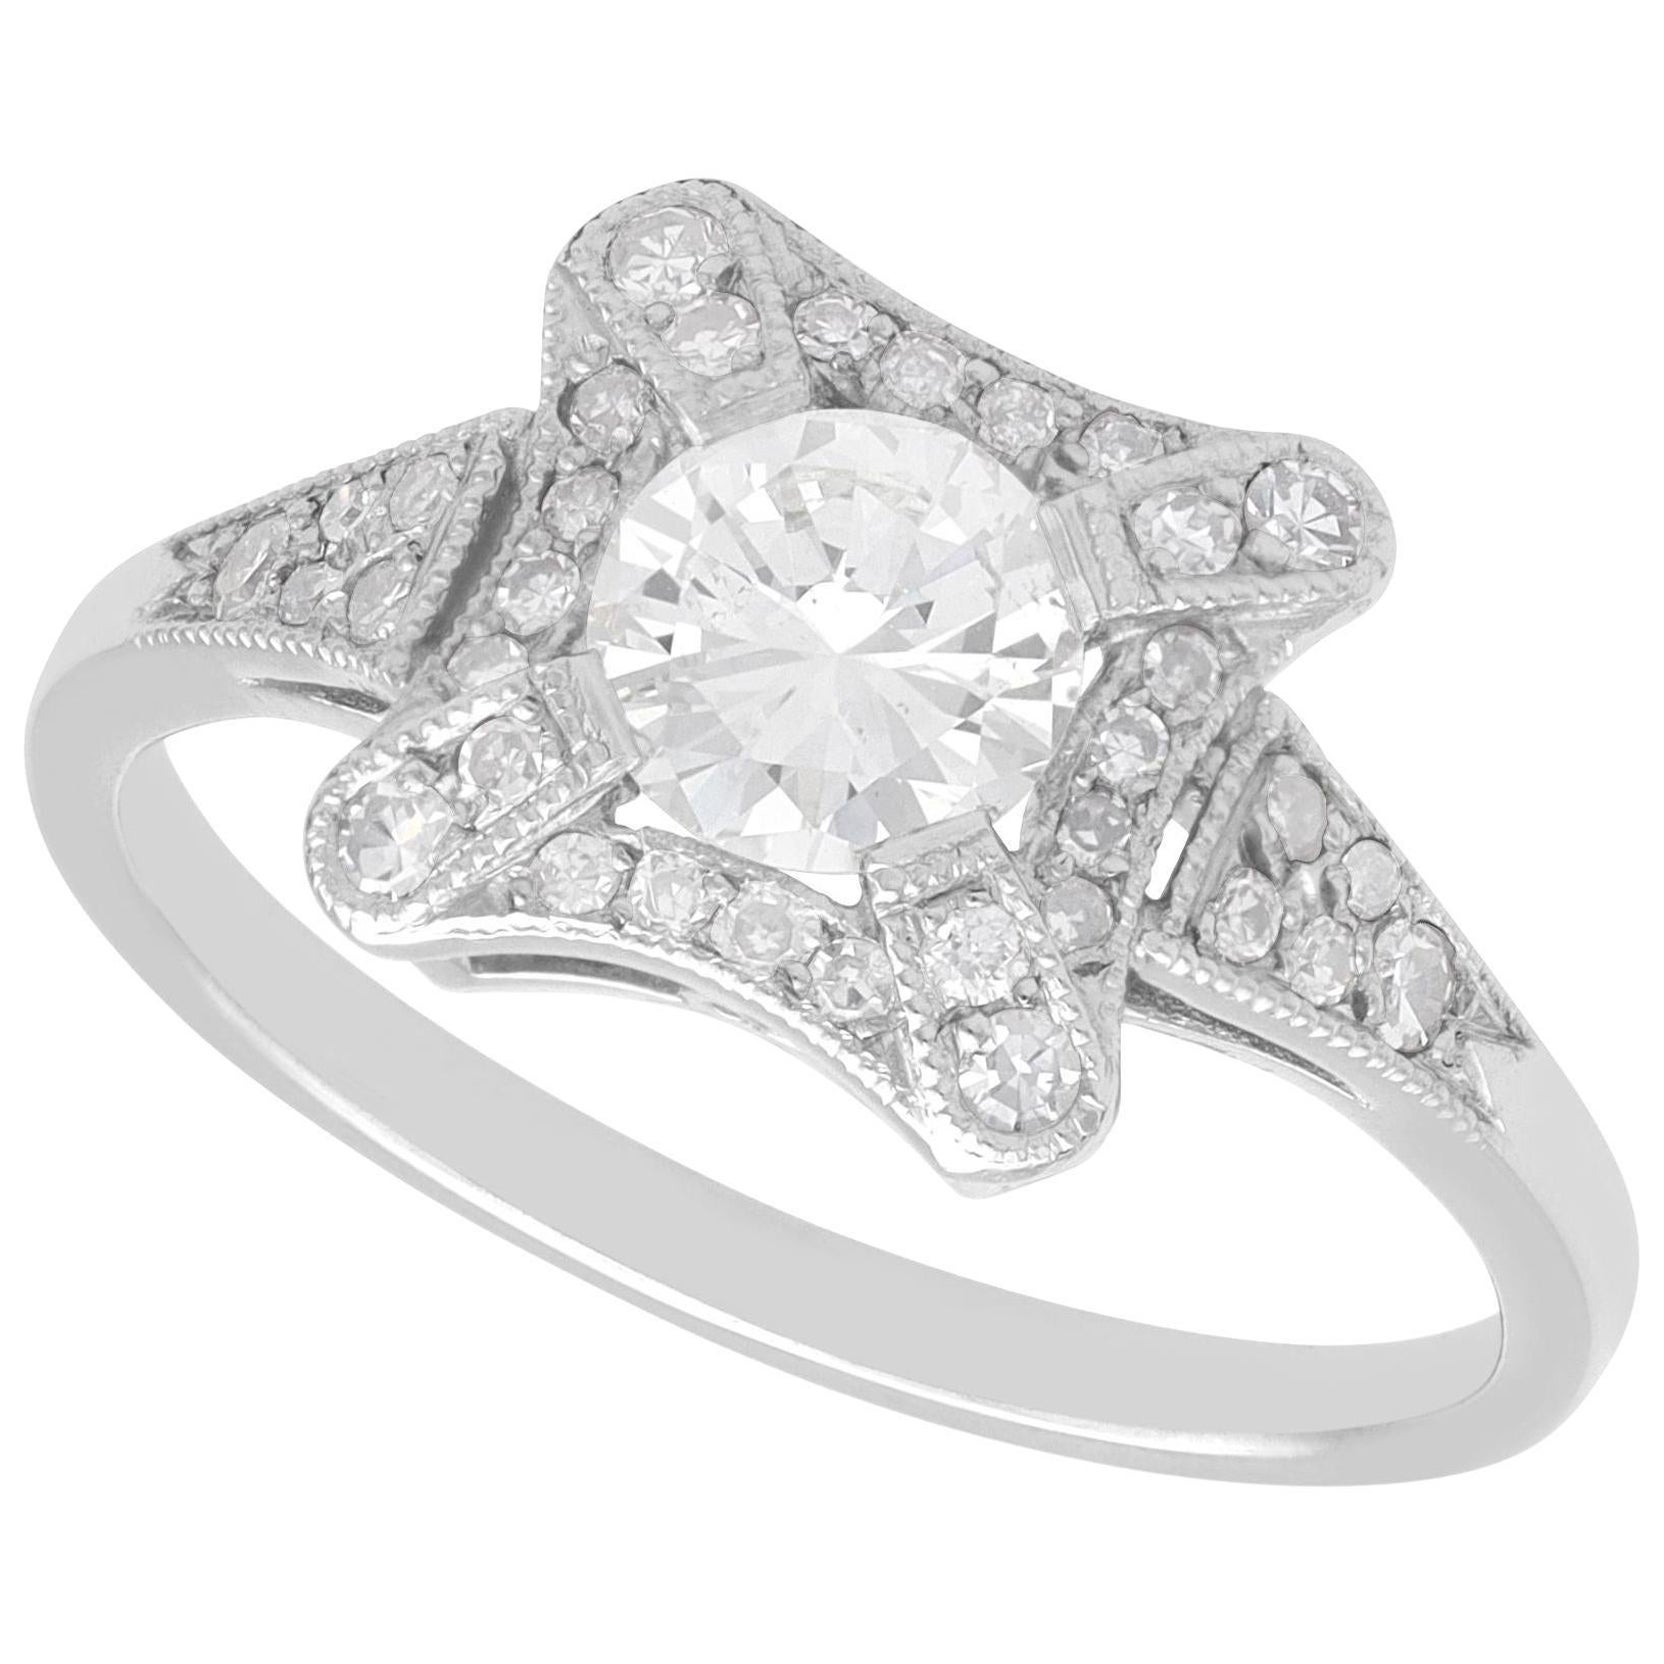 1.01 Carat Diamond and Platinum Cluster Ring